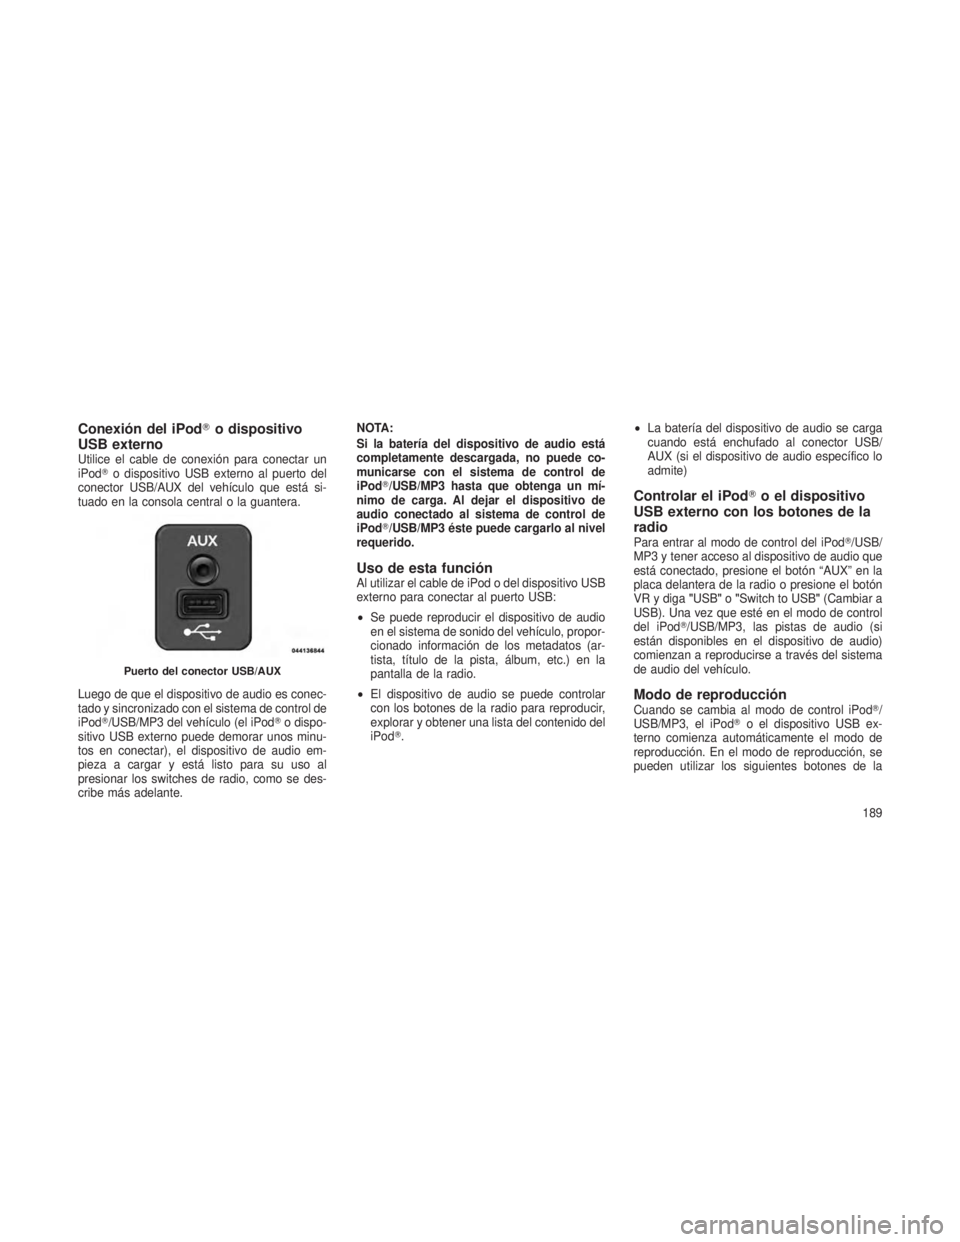 JEEP PATRIOT 2019  Manual de Empleo y Cuidado (in Spanish) Conexión del iPodo dispositivo
USB externo
Utilice el cable de conexión para conectar un
iPod o dispositivo USB externo al puerto del
conector USB/AUX del vehículo que está si-
tuado en la conso